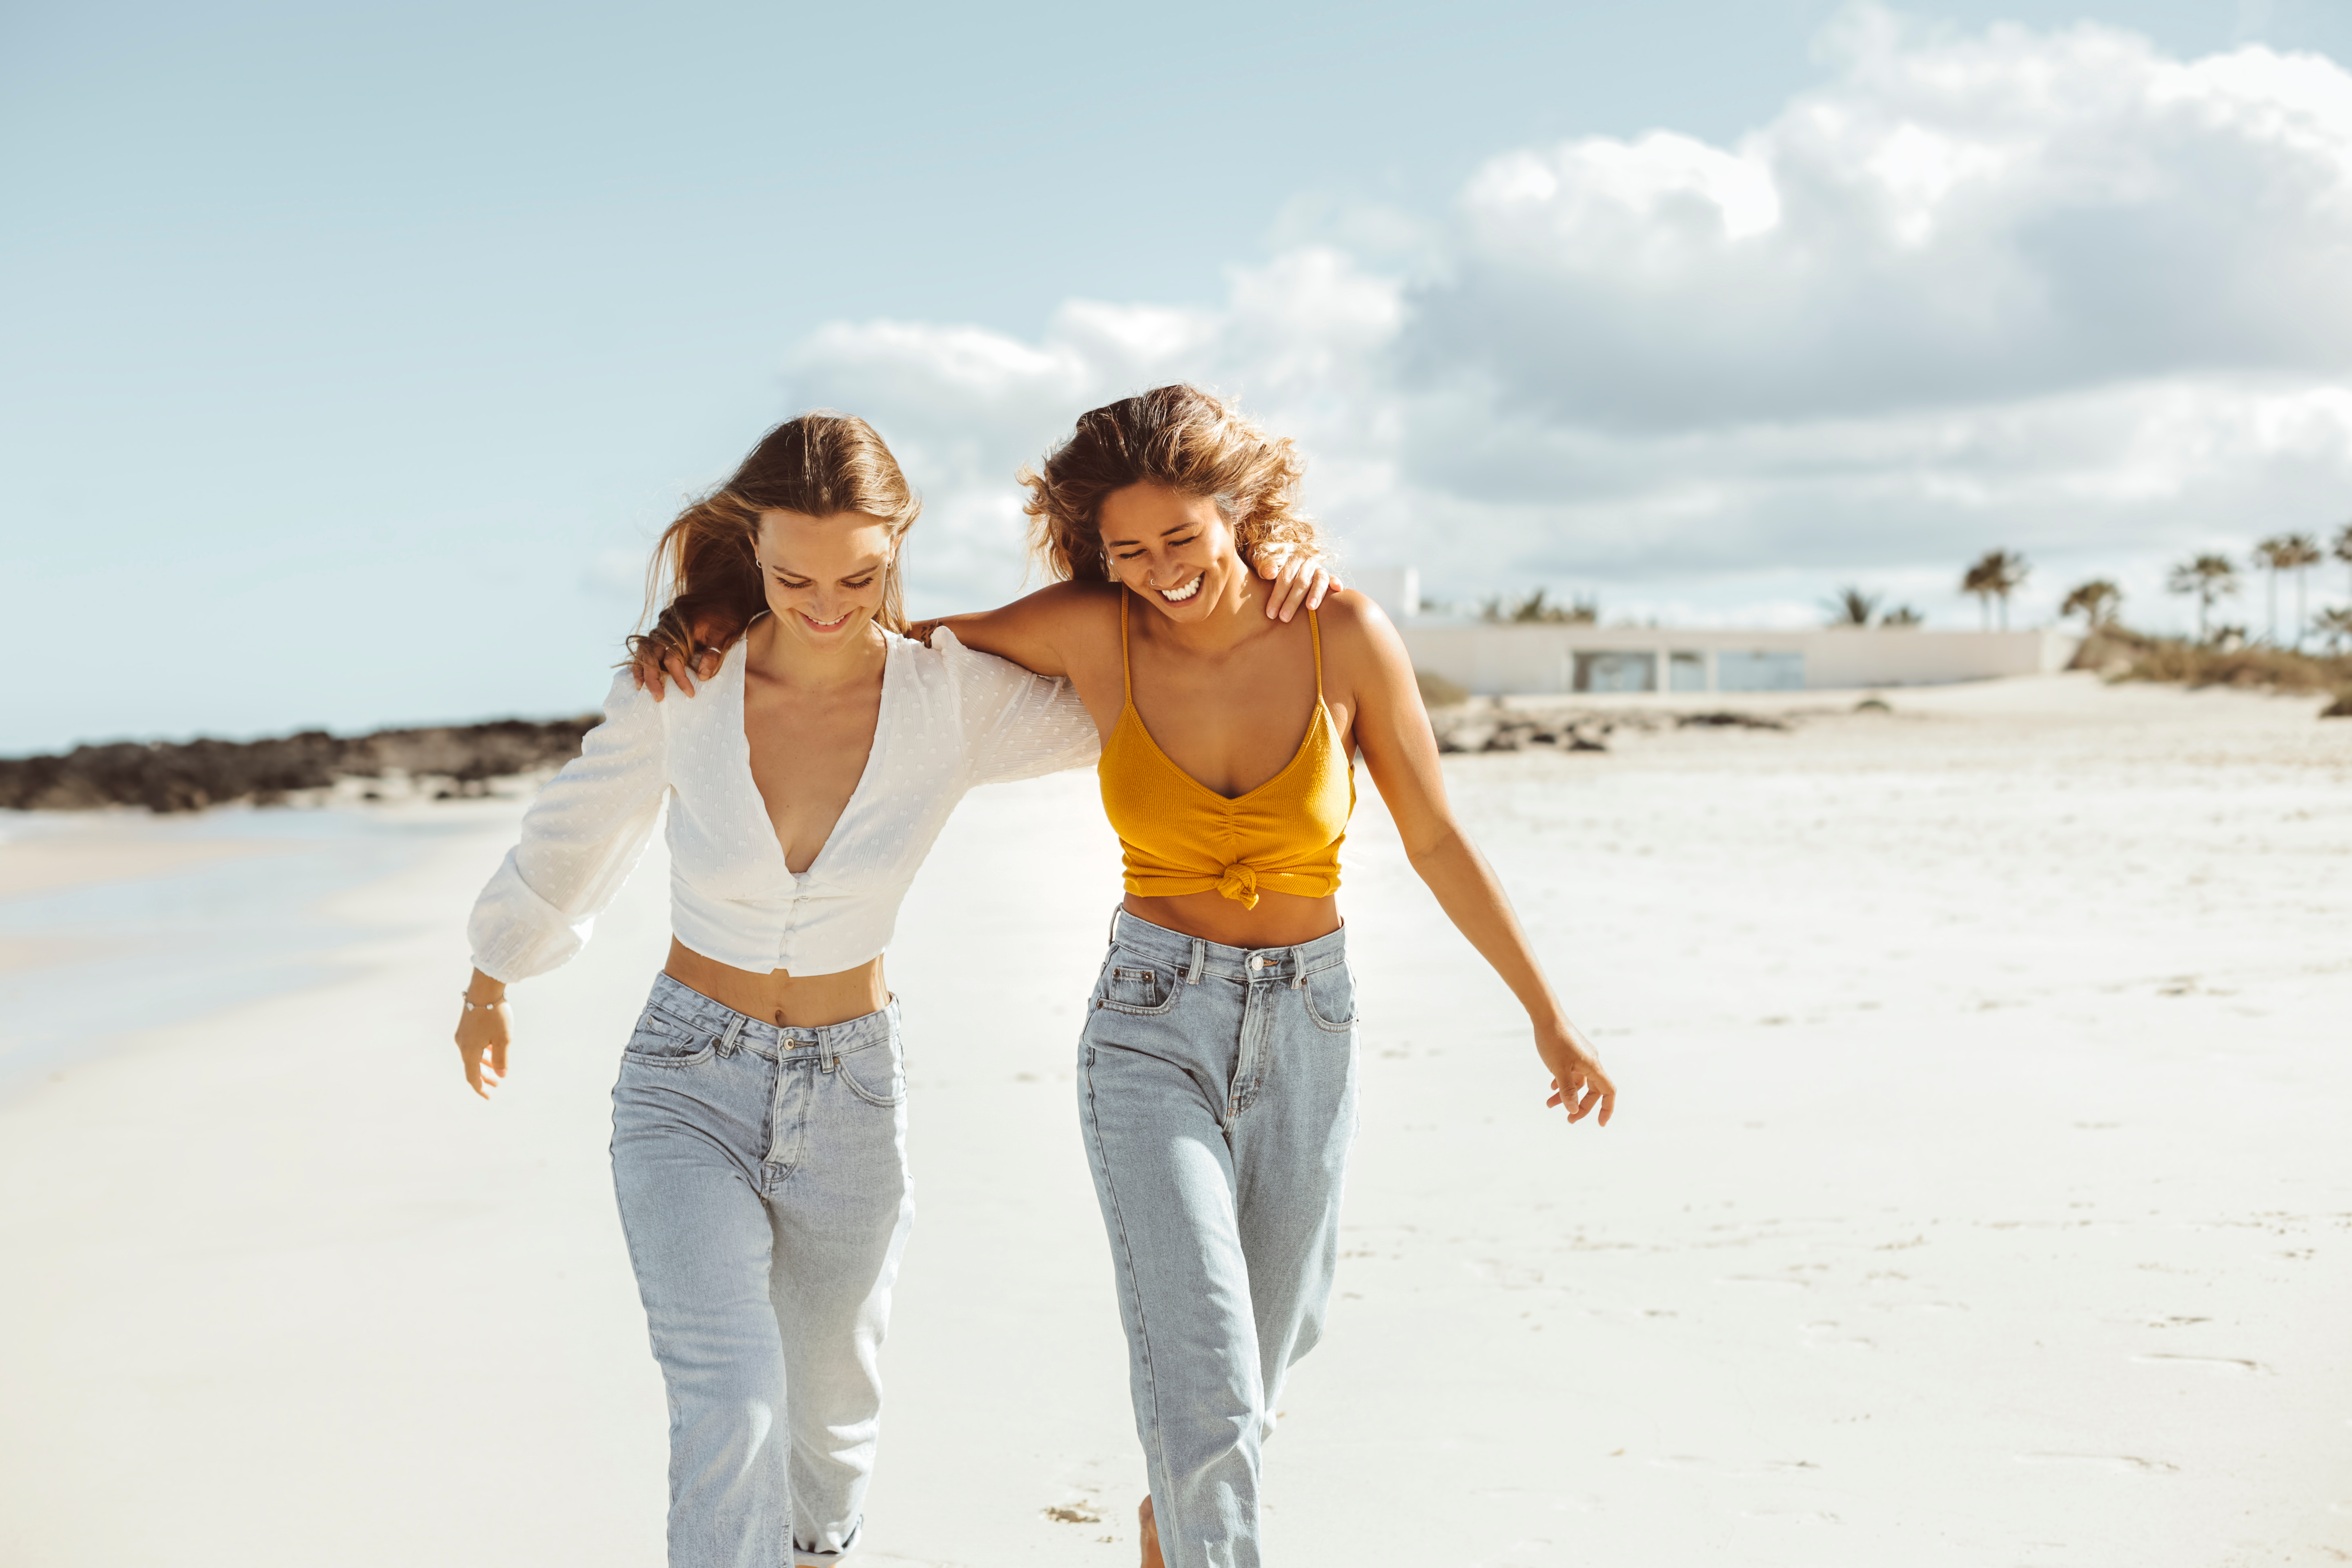 Two women walking on the beach | Source: Shutterstock